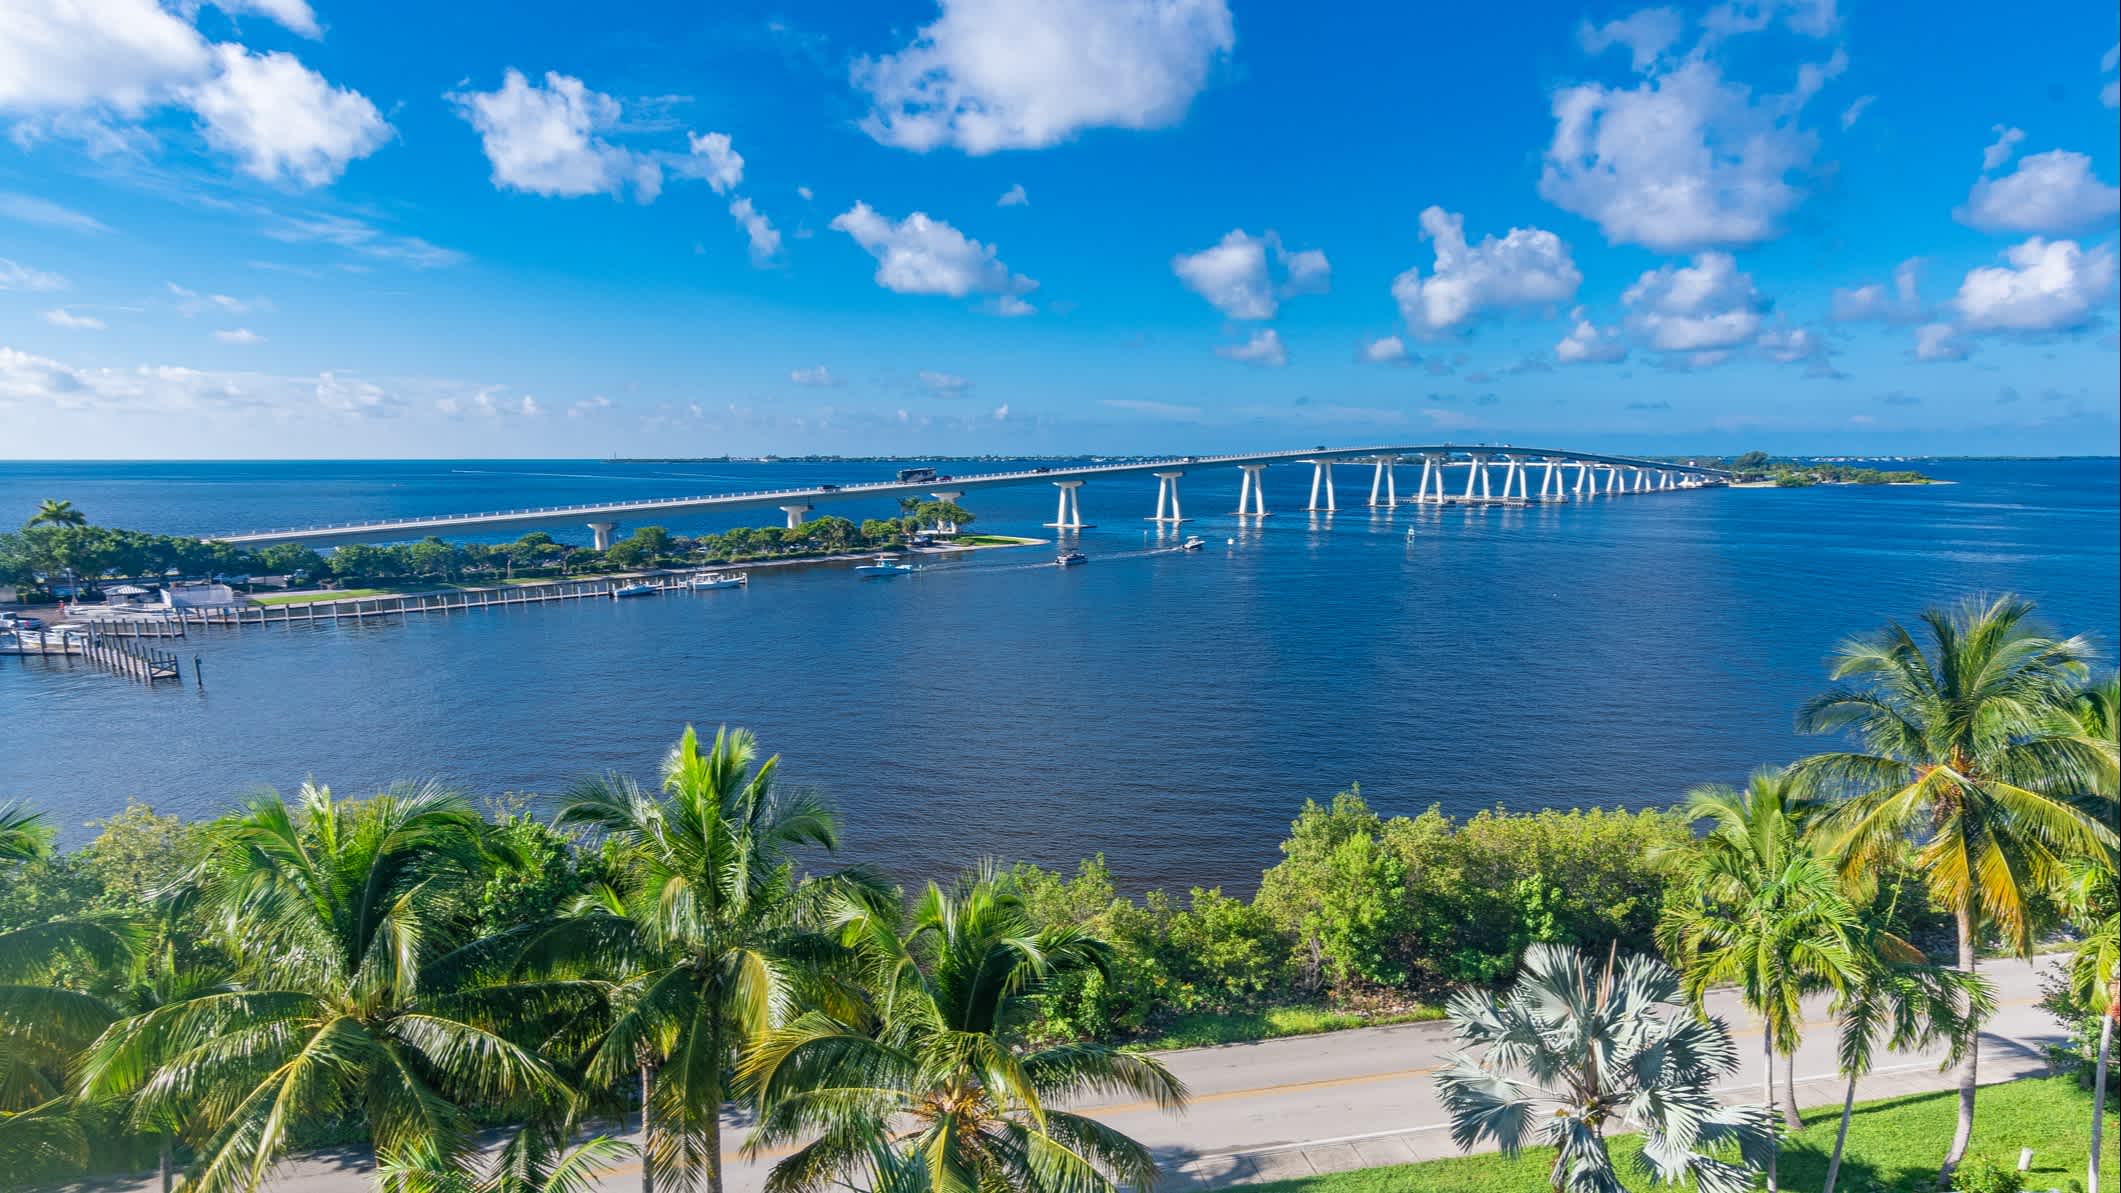 Vue sur la Chaussée de l'île de Sanibel, qui relie l'île de Sanibel à Fort Myers. Floride, États-Unis.
